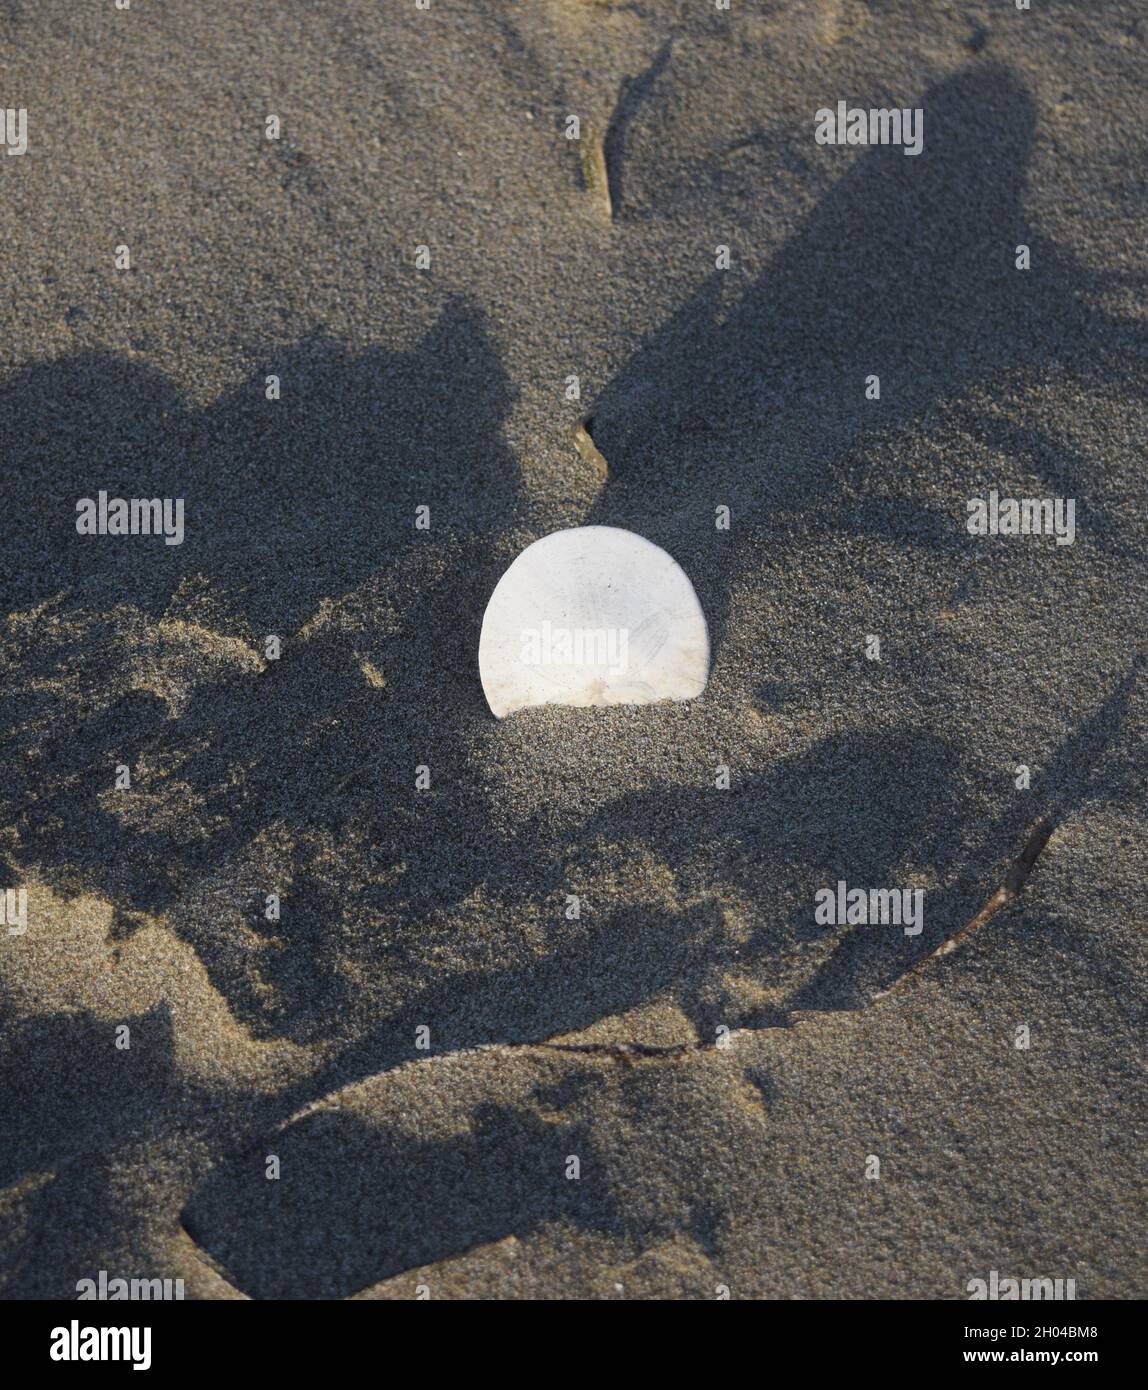 Vertikale Aufnahme eines weißen Sanddollar, der auf halbem Weg aus dem Strandsand ragt und Schatten um ihn herum hat Stockfoto